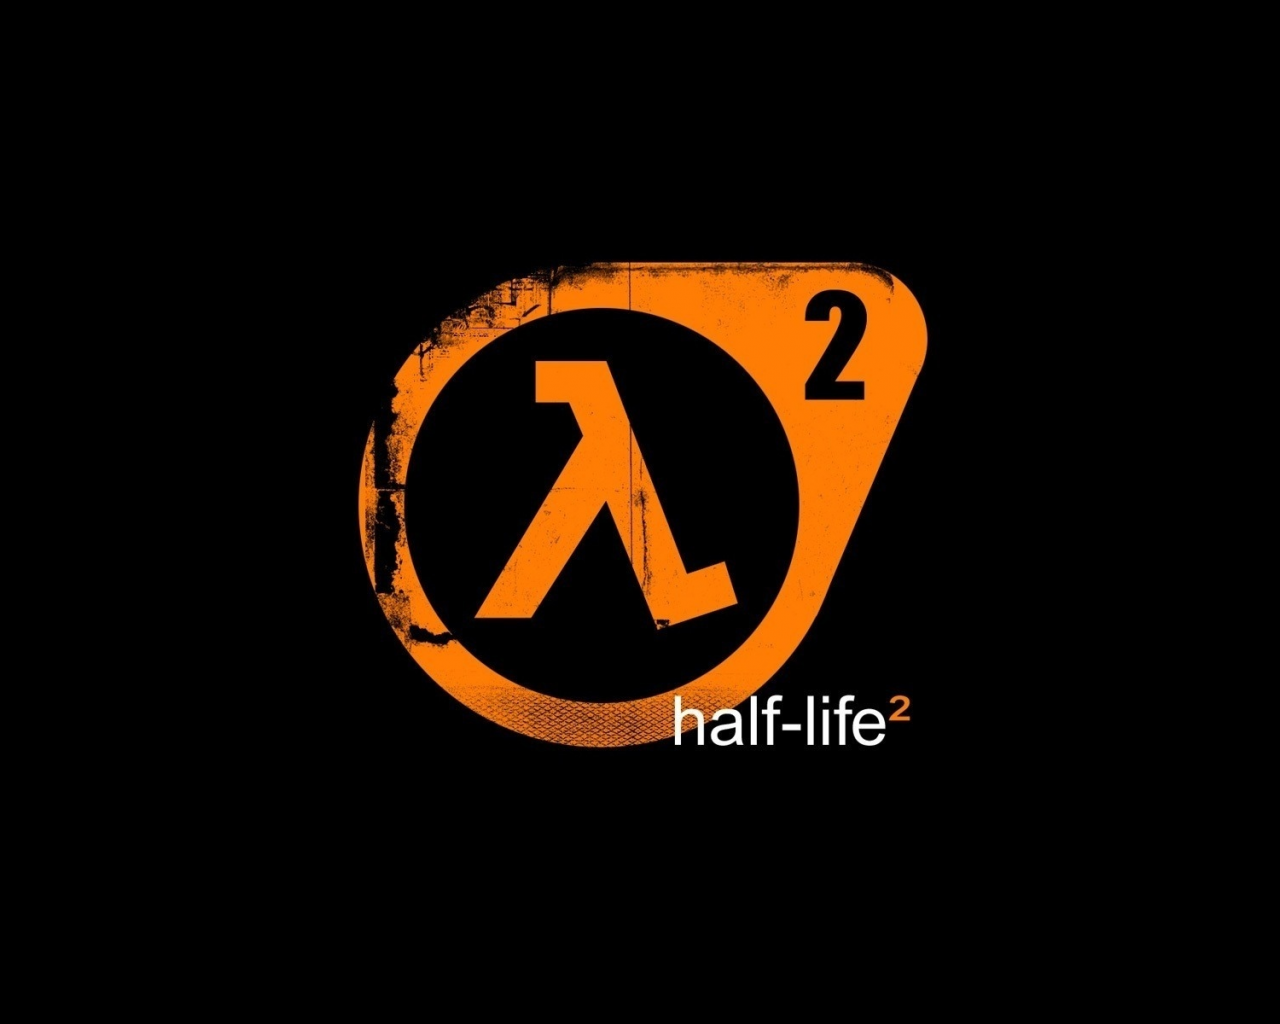 lambda, half life, logo